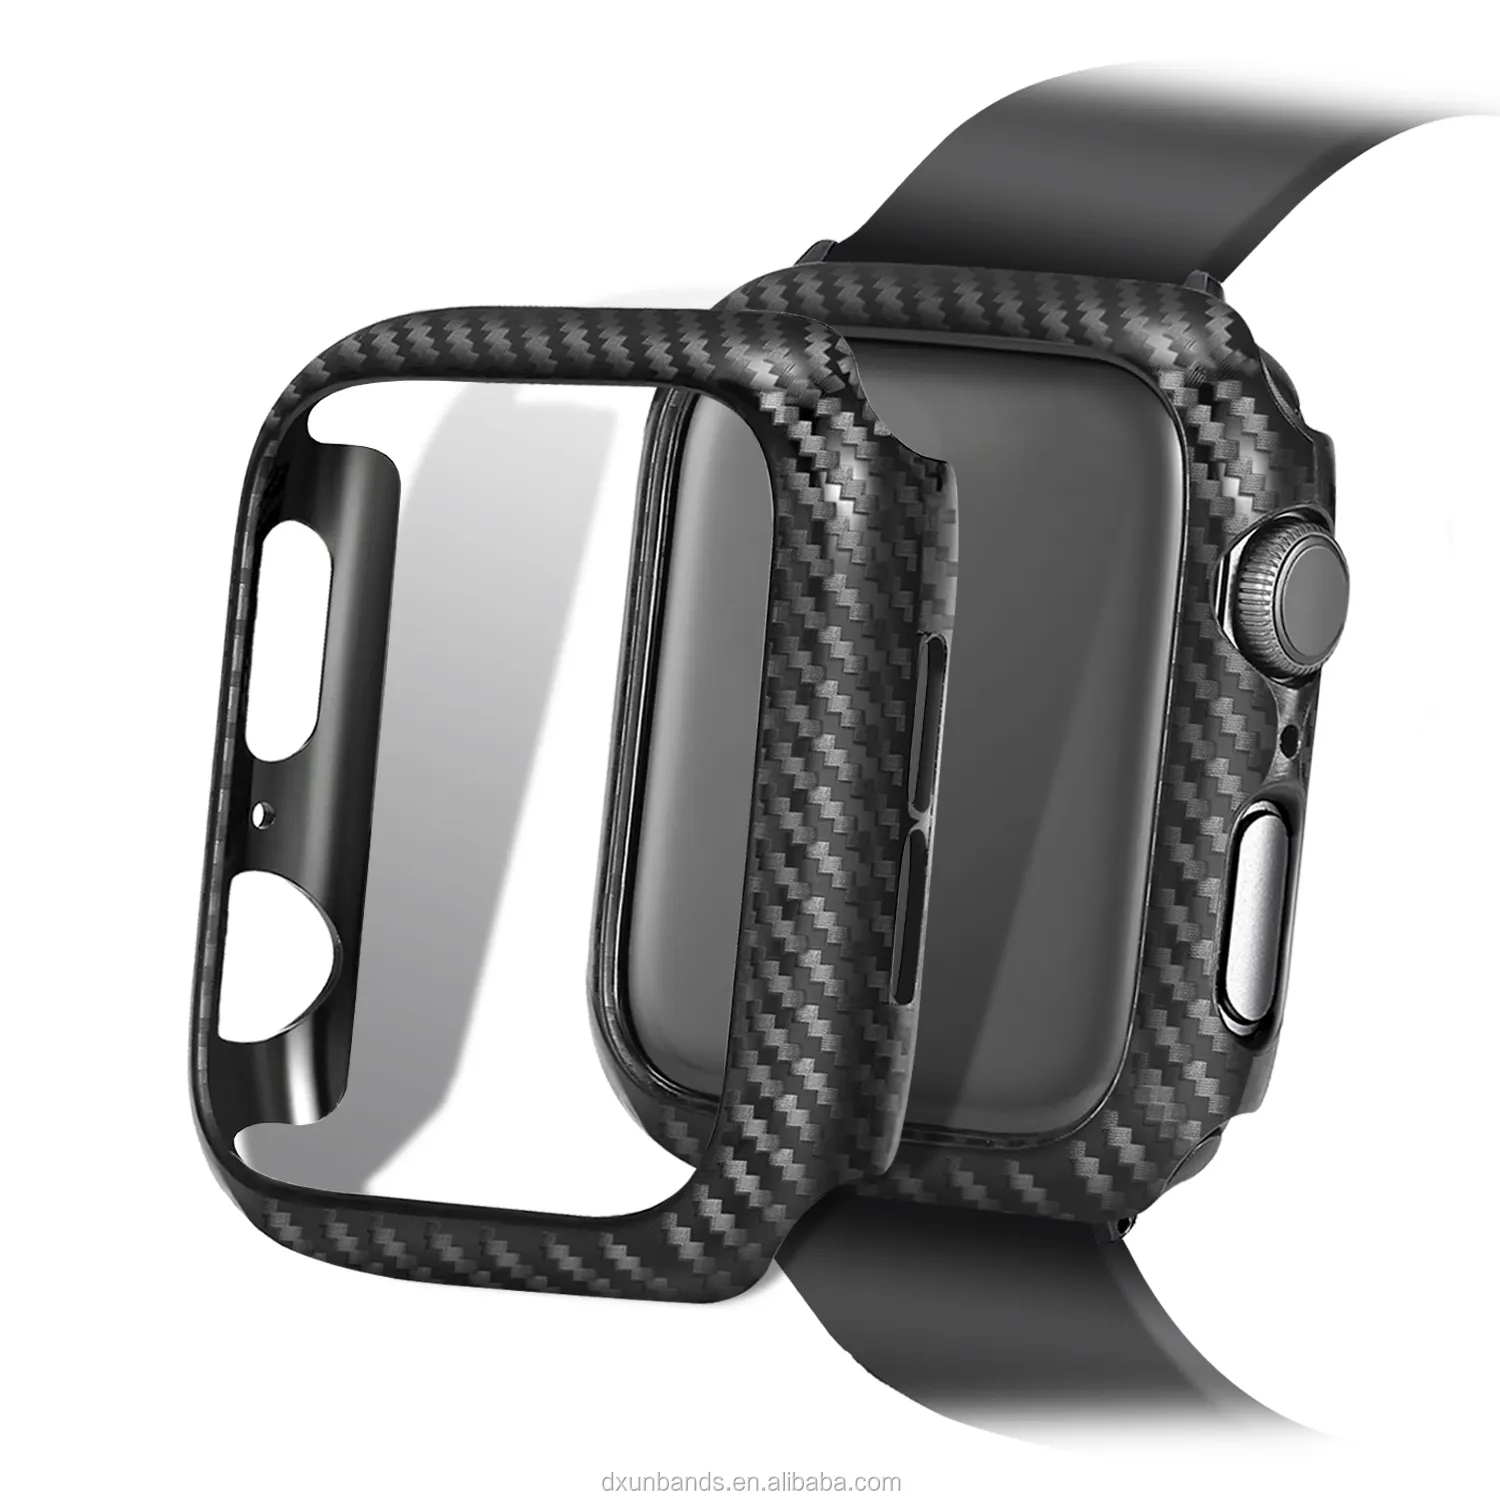 El más nuevo diseño funda de fibra de carbono caso protector para Apple Watch serie 4/3/2/1 44mm 40mm, 42mm, 38mm TPU caso